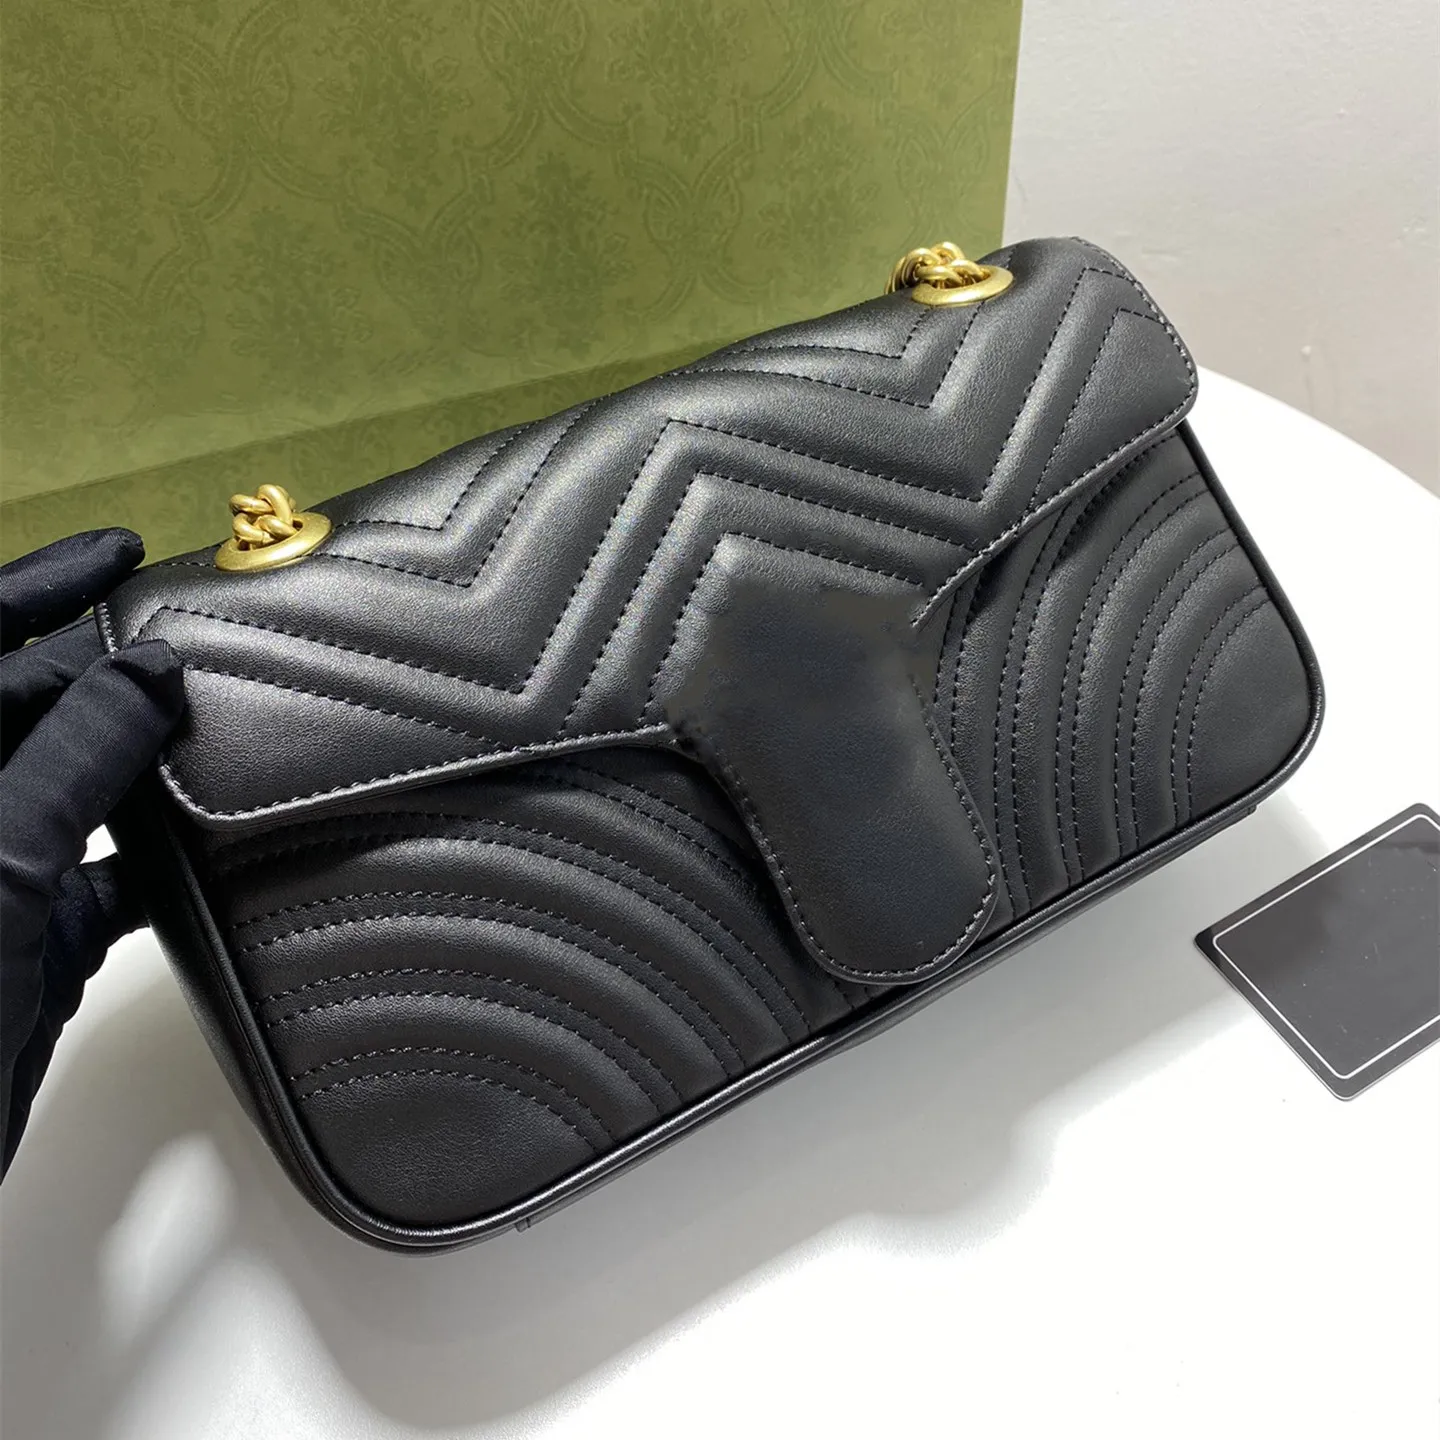 Handbag Genuine Leather women Marmont Messenger bag purse gold chain shoulder cross body ladies Fashion Mini bags woman wallet 5 colors 16.5cm 22cm 26cm GB85